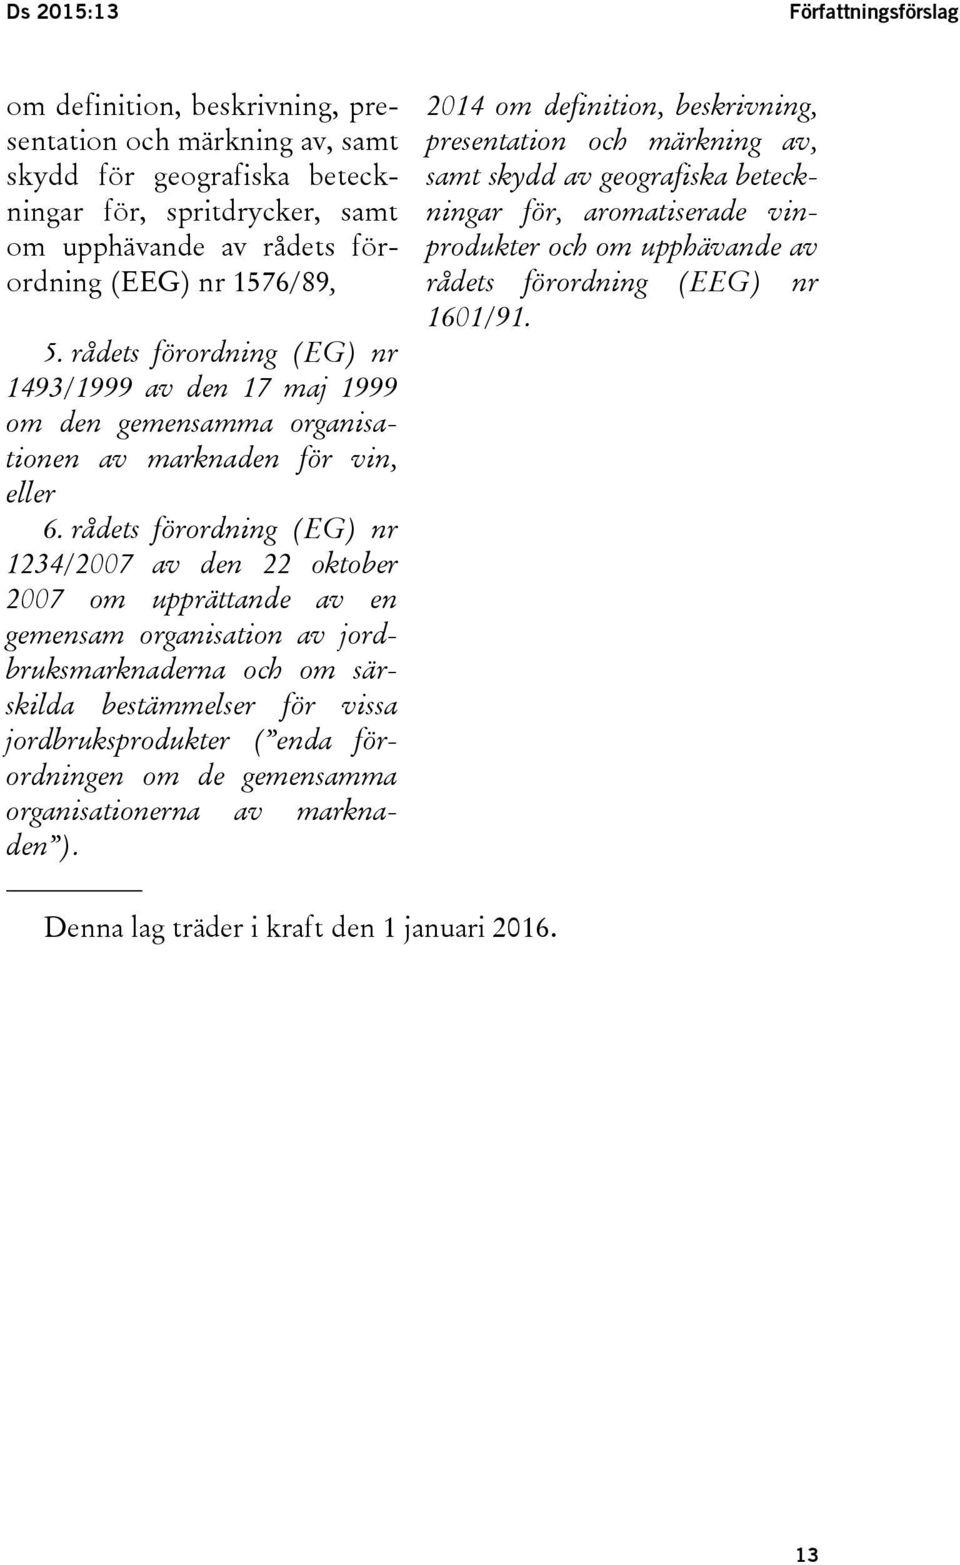 rådets förordning (EG) nr 1234/2007 av den 22 oktober 2007 om upprättande av en gemensam organisation av jordbruksmarknaderna och om särskilda bestämmelser för vissa jordbruksprodukter ( enda